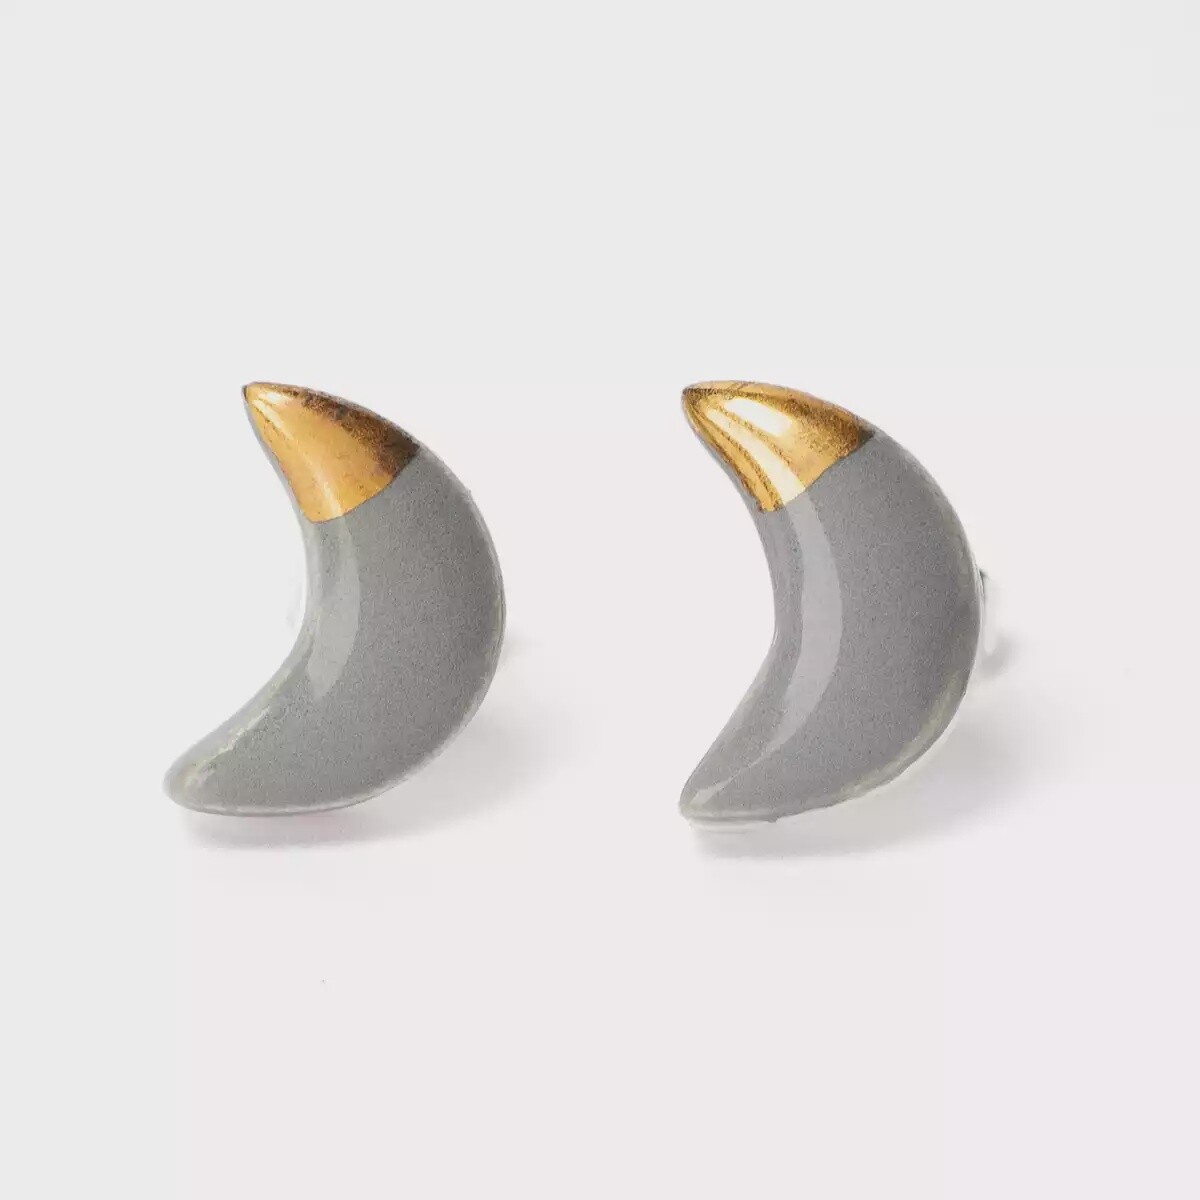 Ceramic Moon Stud Earrings - Dark Grey by Clay Blanca